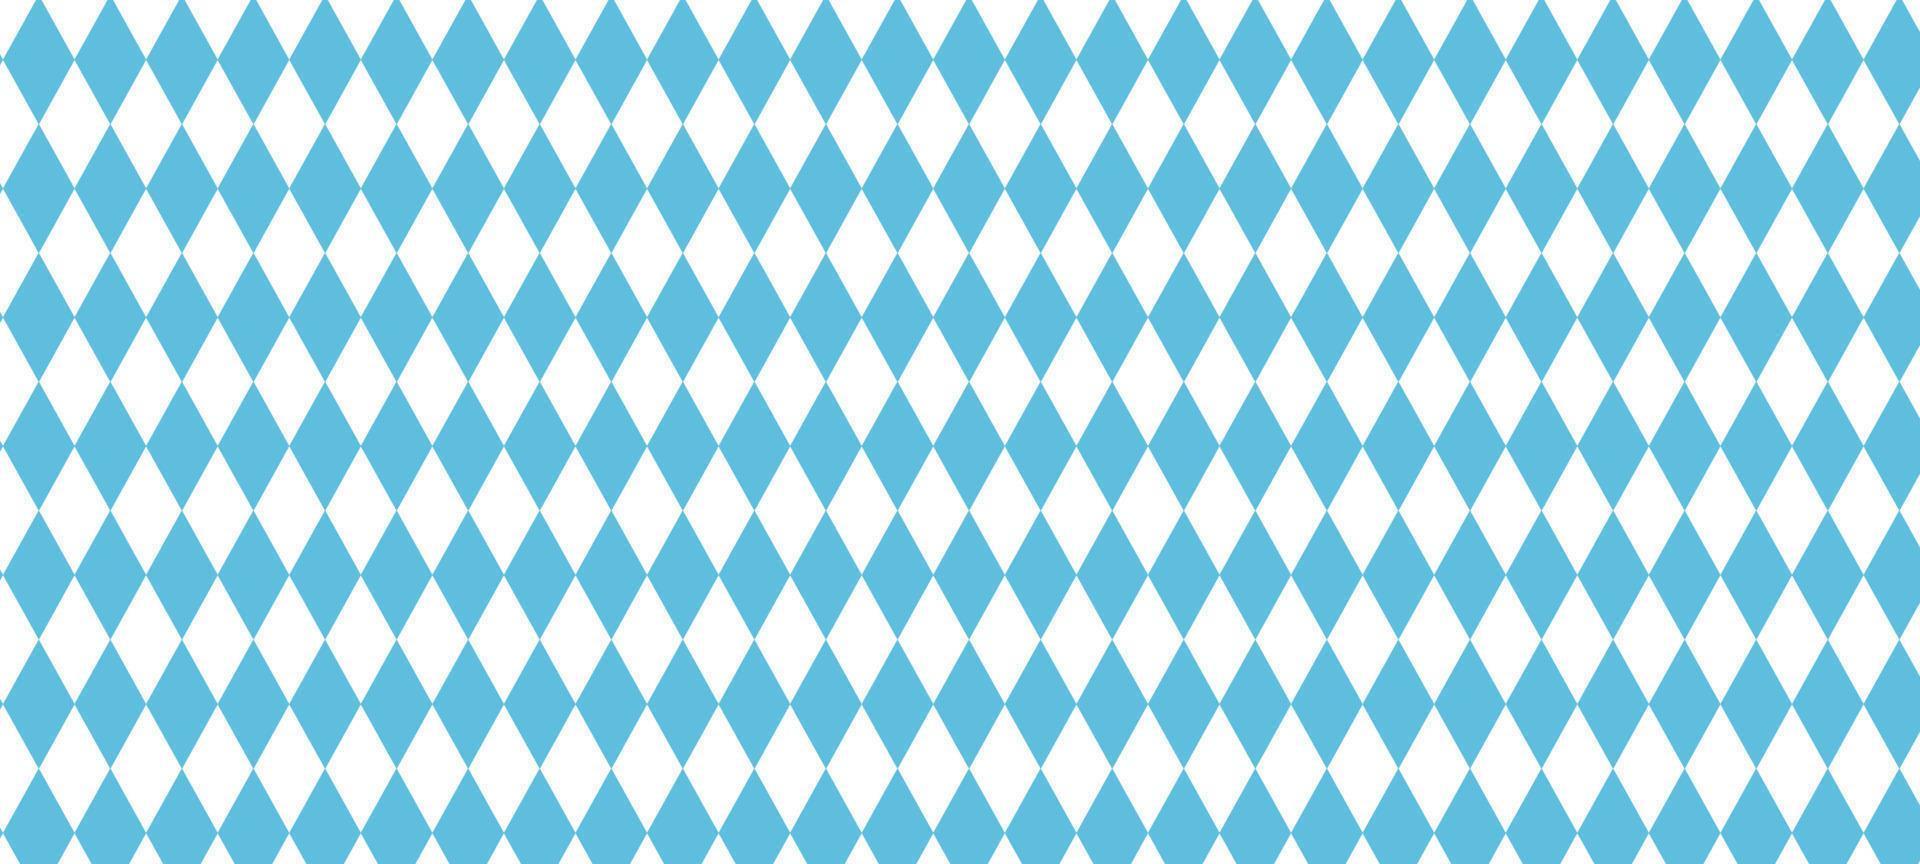 padrão bávaro para oktoberfest. textura de losango azul alemão. ilustração vetorial vetor